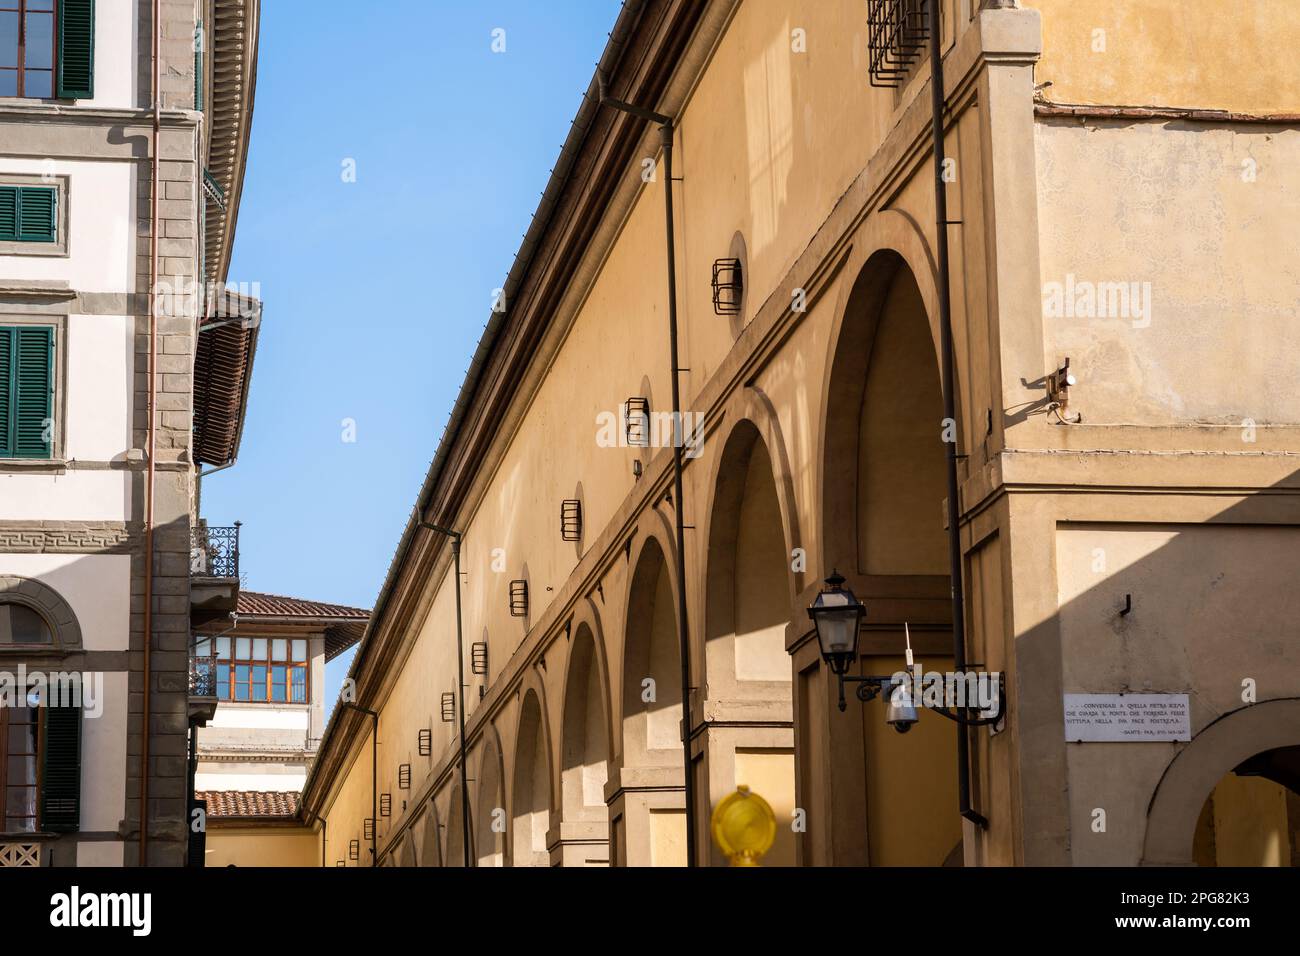 Il Corridoio Vasariano collegava Palazzo Vecchio a Palazzo Pitti , passando per i negozi del Ponte Vecchio - un passaggio sotto il fiume. Foto Stock